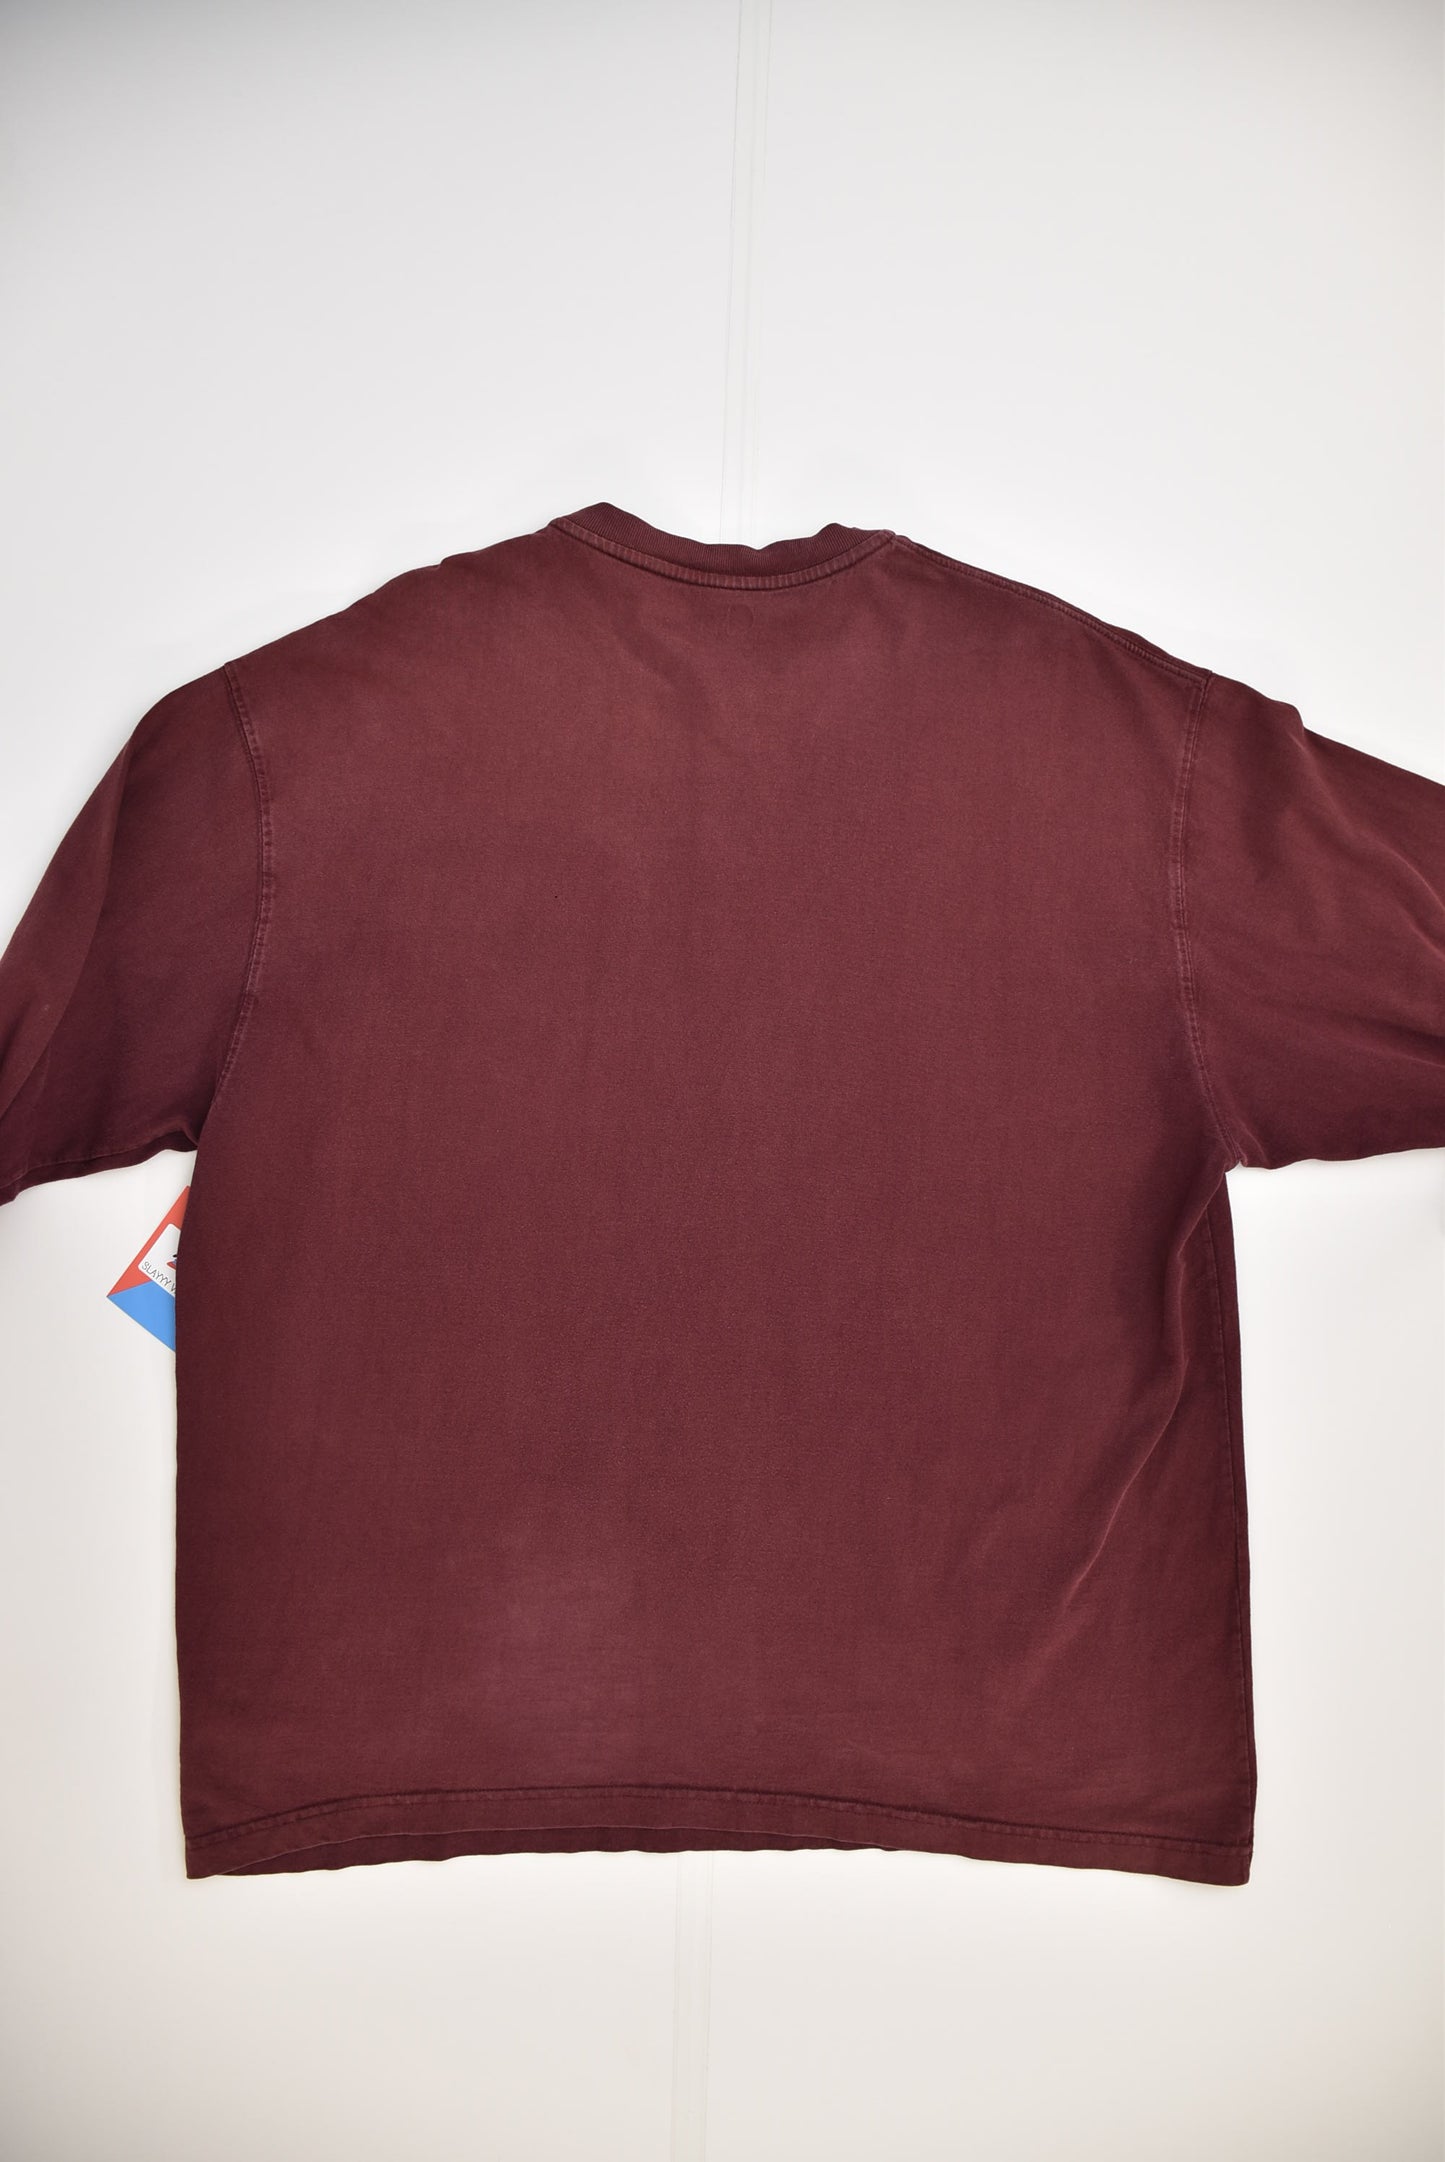 Carhartt Pocket T-shirt (XL)